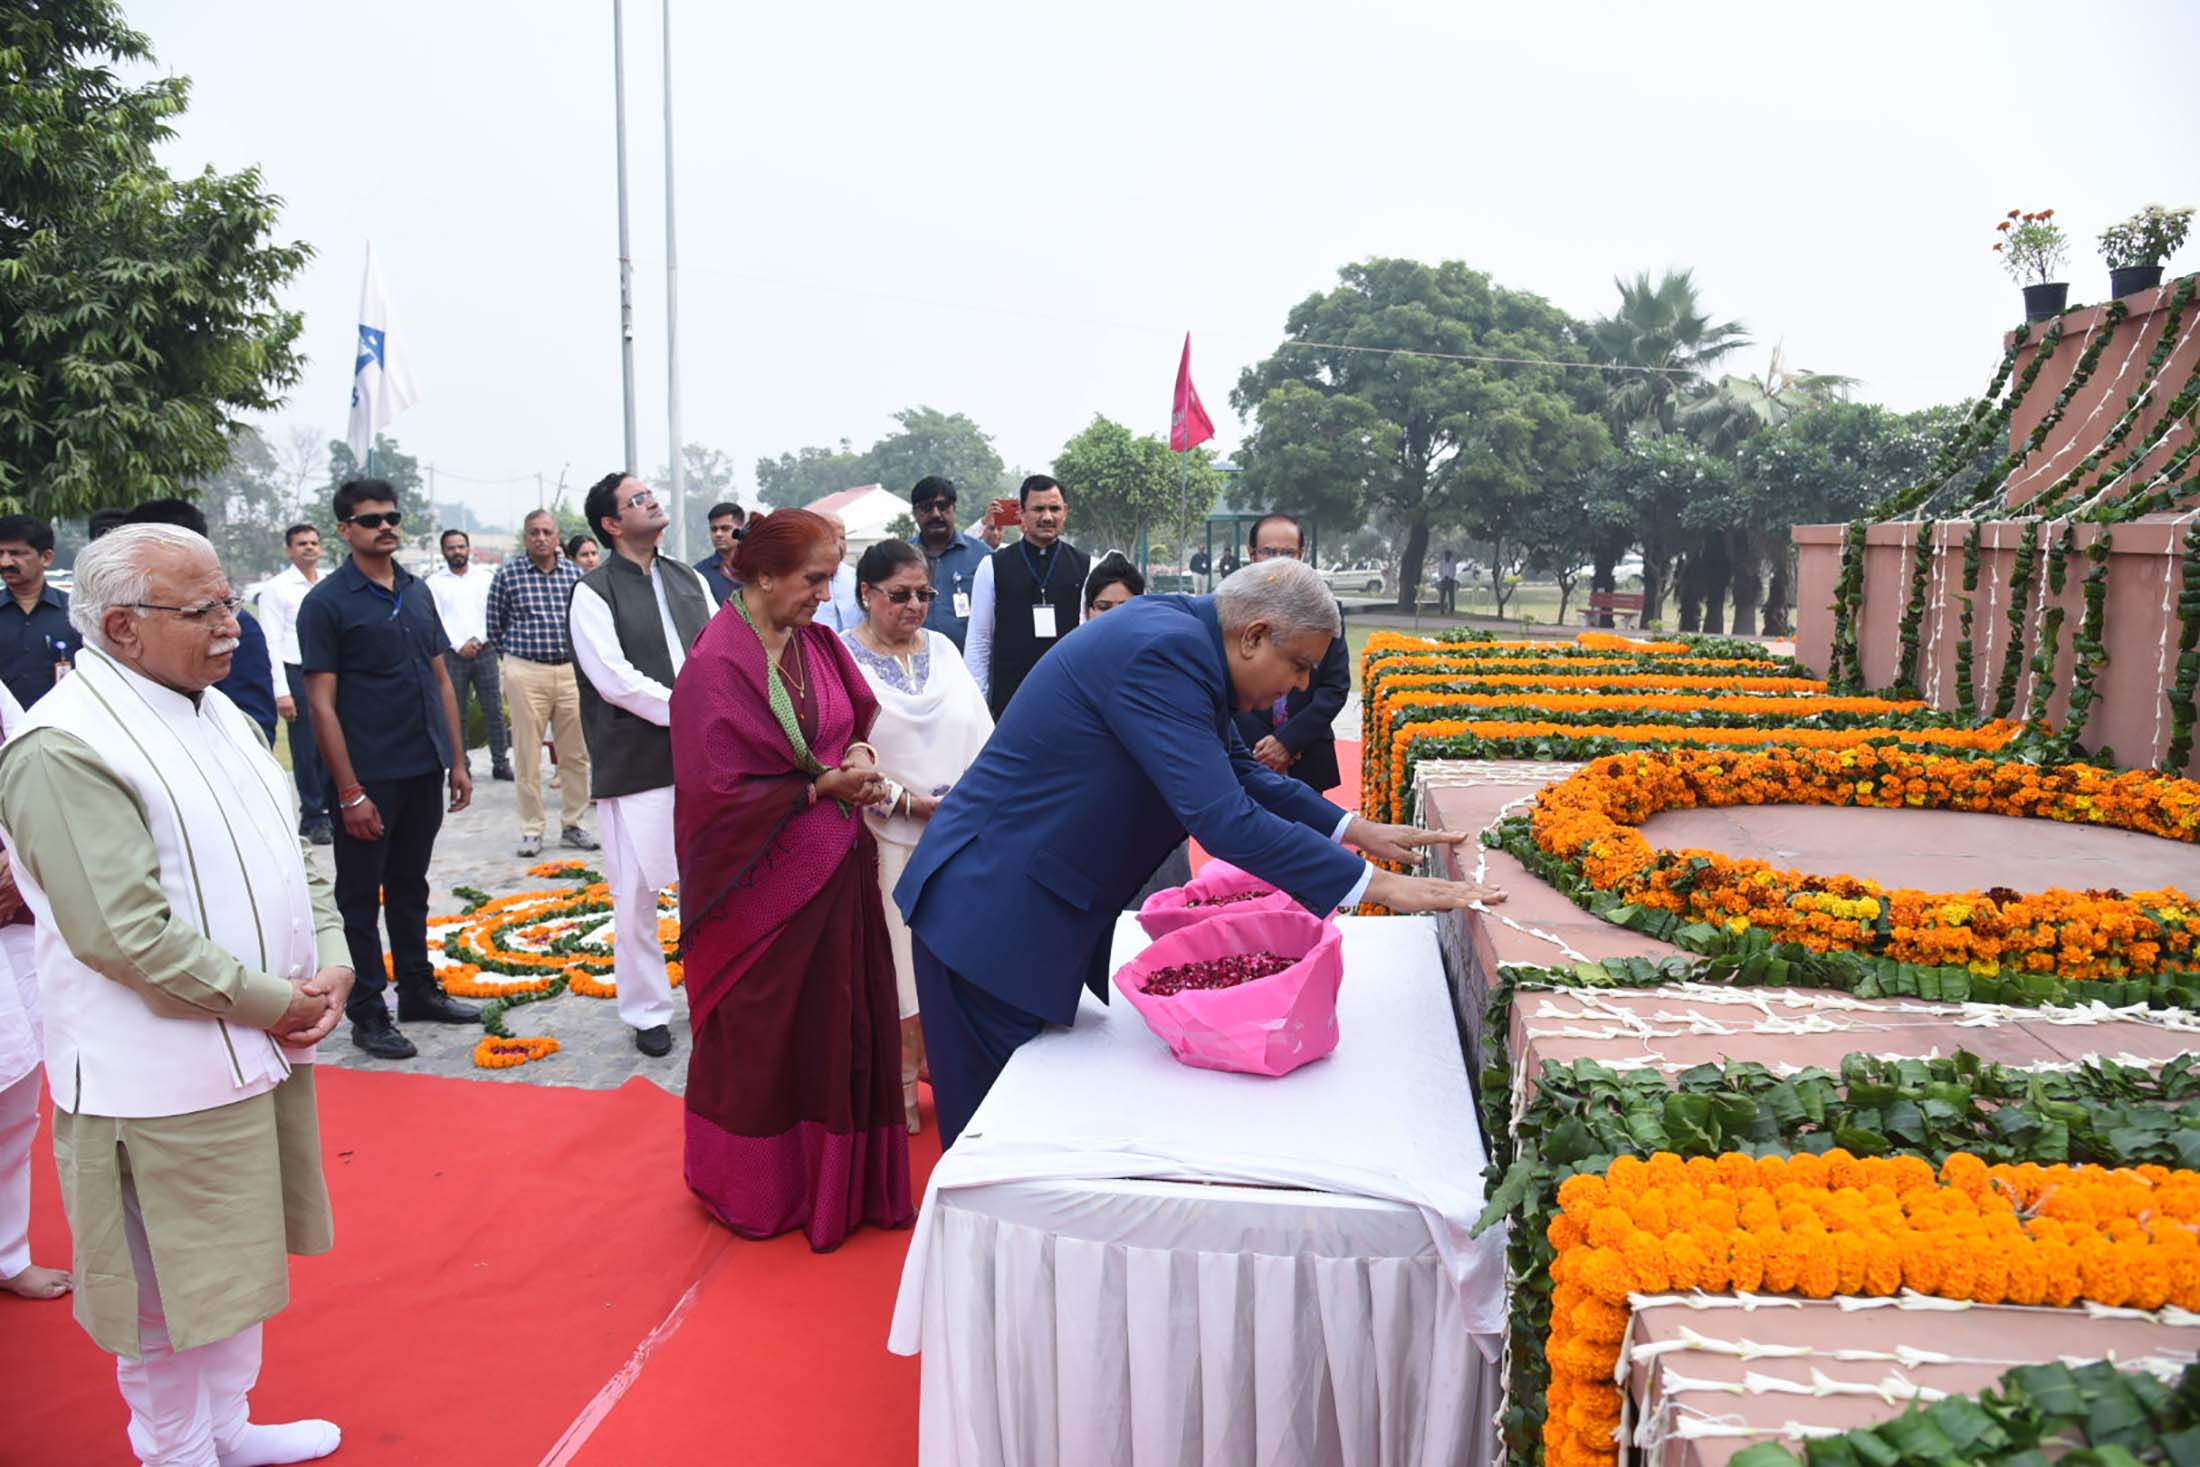 8 नवंबर, 2022 को रोहतक के गढ़ी सांपला में सर छोटू राम स्मारक पर पुष्पांजलि अर्पित करते हुए उपराष्ट्रपति श्री जगदीप धनखड़ और उनकी धर्मपत्नी डॉ सुदेश धनखड़।